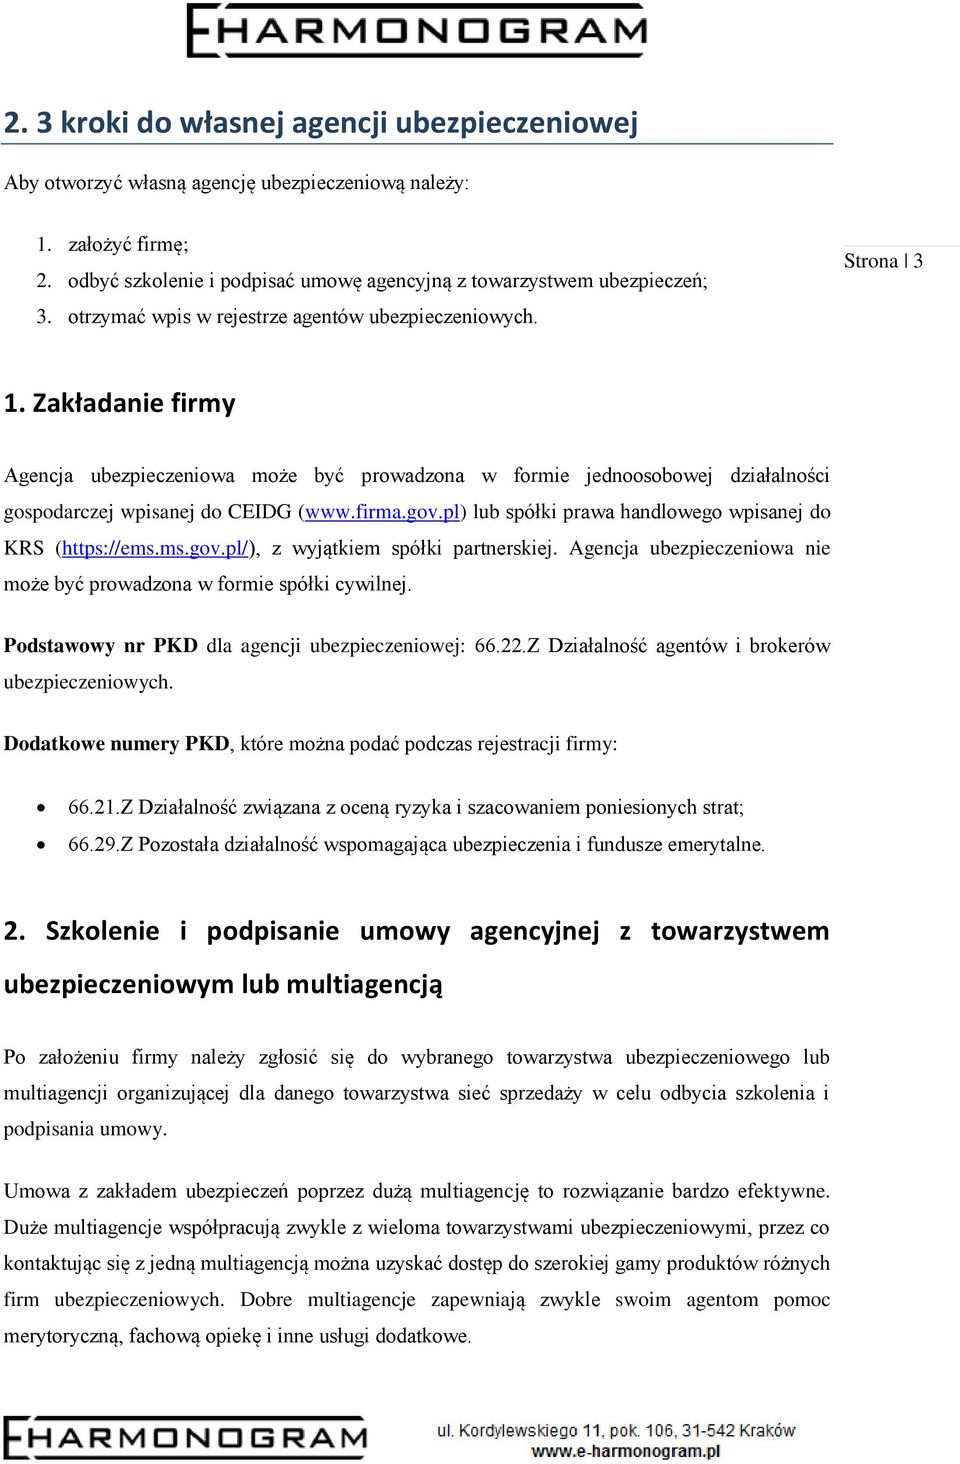 firma.gov.pl) lub spółki prawa handlowego wpisanej do KRS (https://ems.ms.gov.pl/), z wyjątkiem spółki partnerskiej. Agencja ubezpieczeniowa nie może być prowadzona w formie spółki cywilnej.